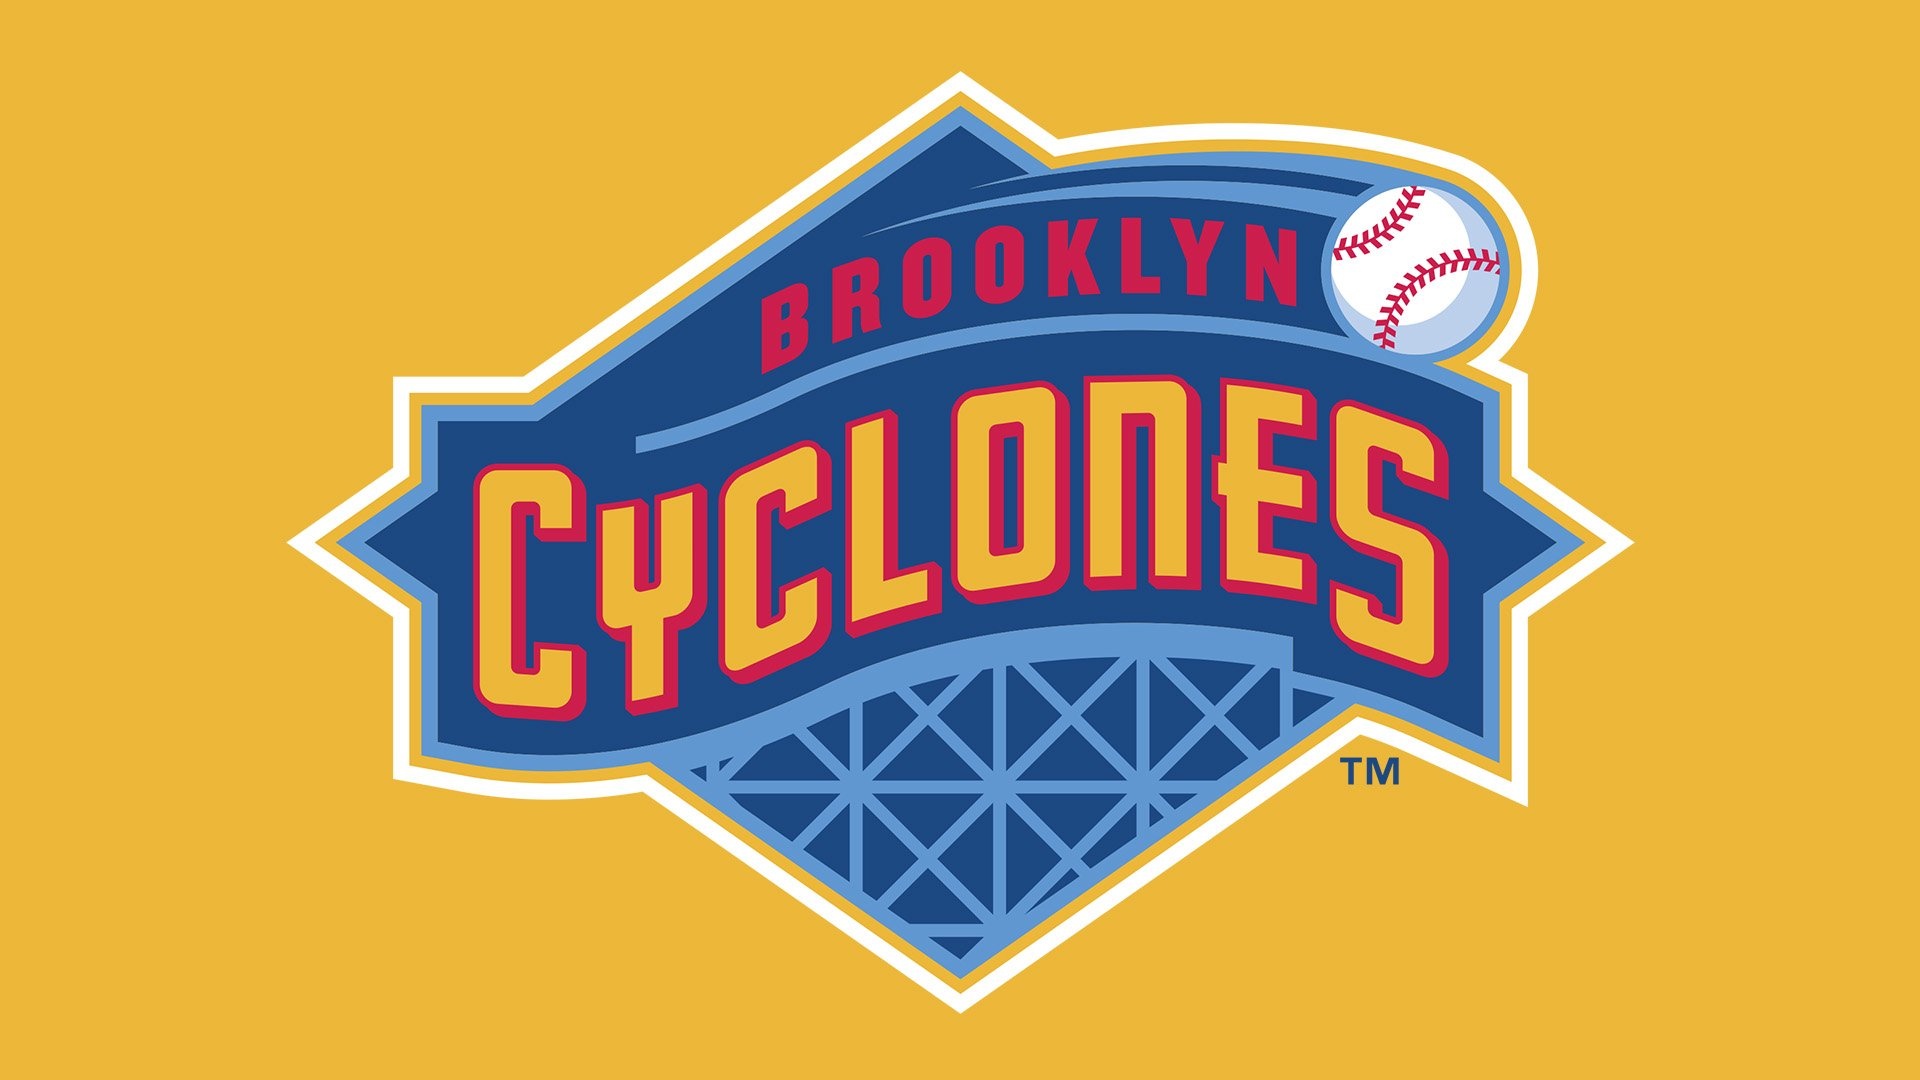 Brooklyn Cyclones logo, Symbol meaning, 1920x1080 Full HD Desktop